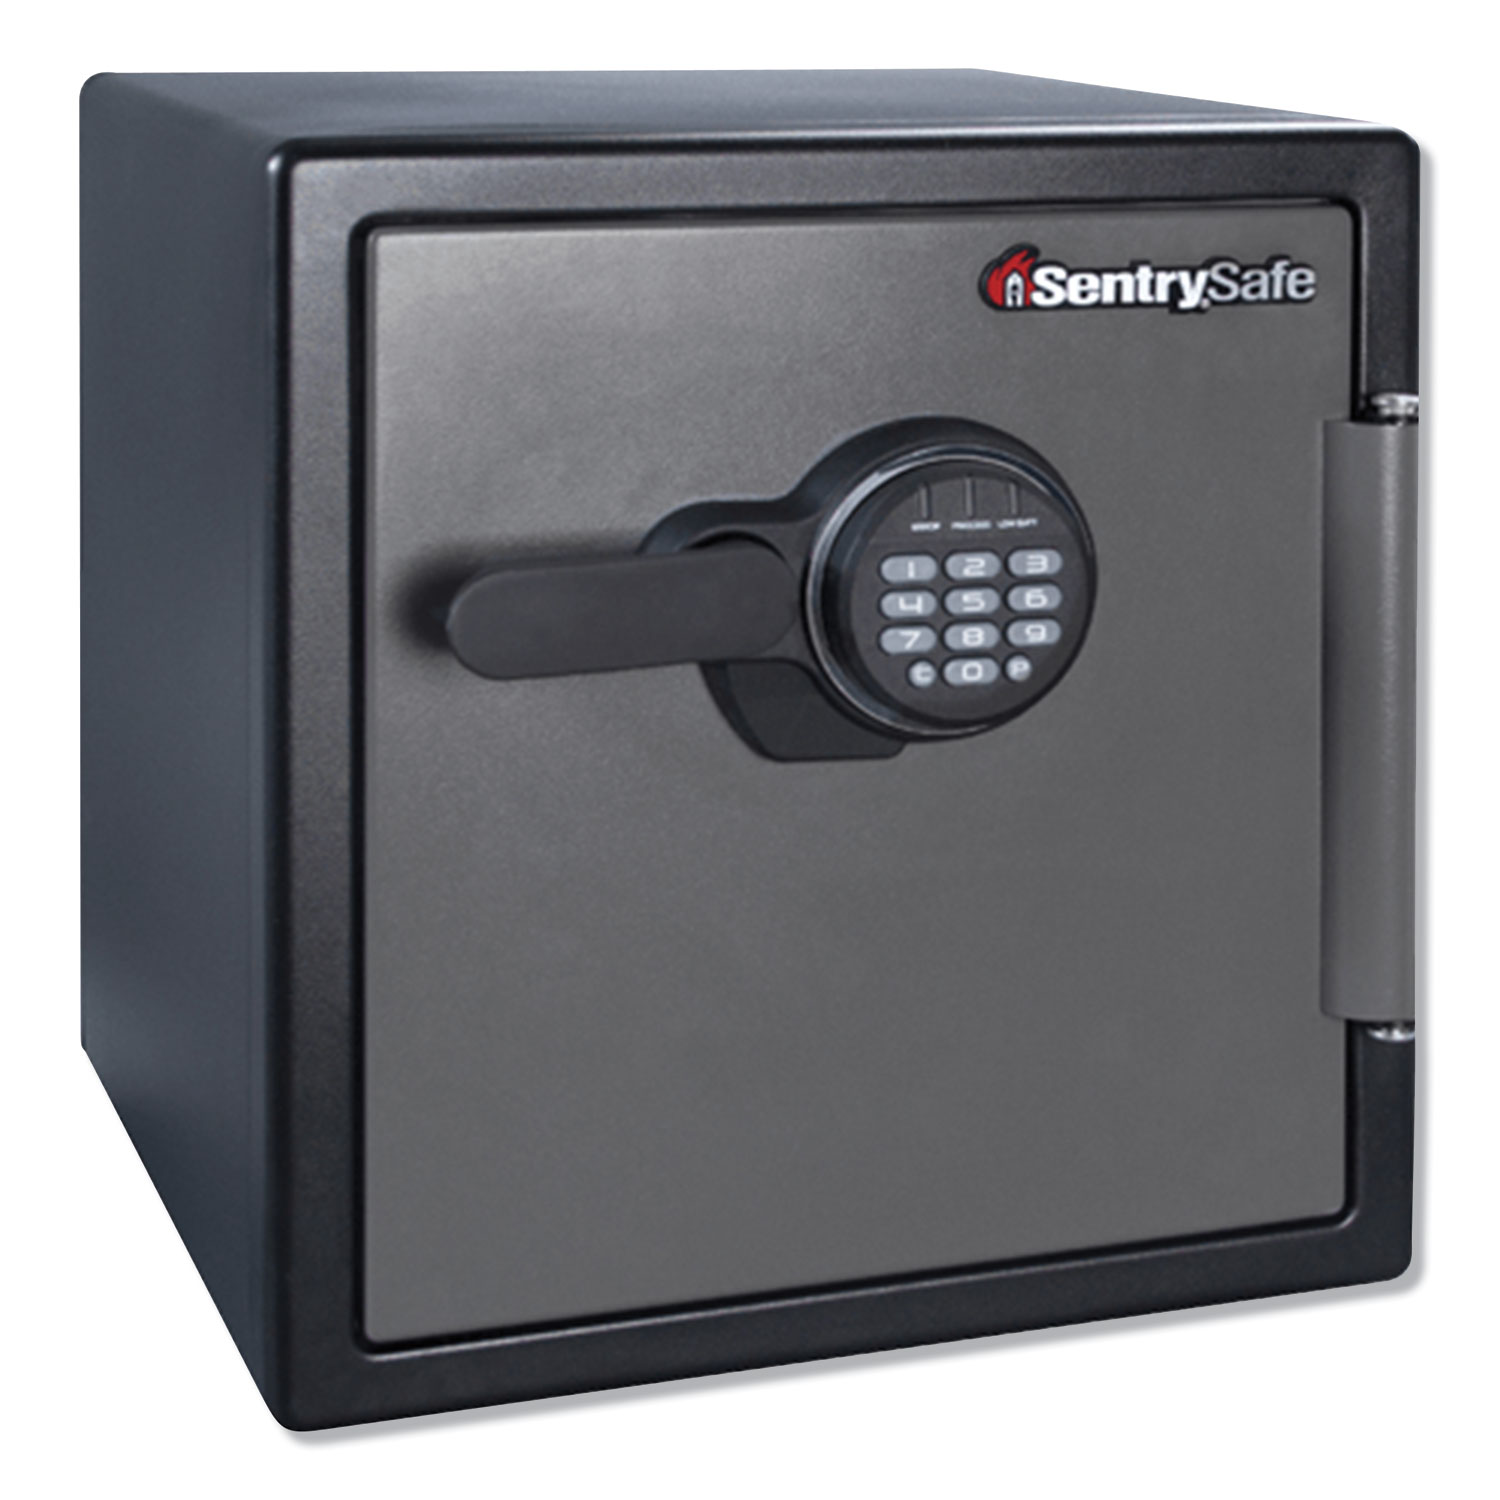  Sentry Safe SFW123ES Fire-Safe with Digital Keypad Access, 1.23 cu ft, 16.38w x 19.38d x 17.88h, Gunmetal (SENSFW123ES) 